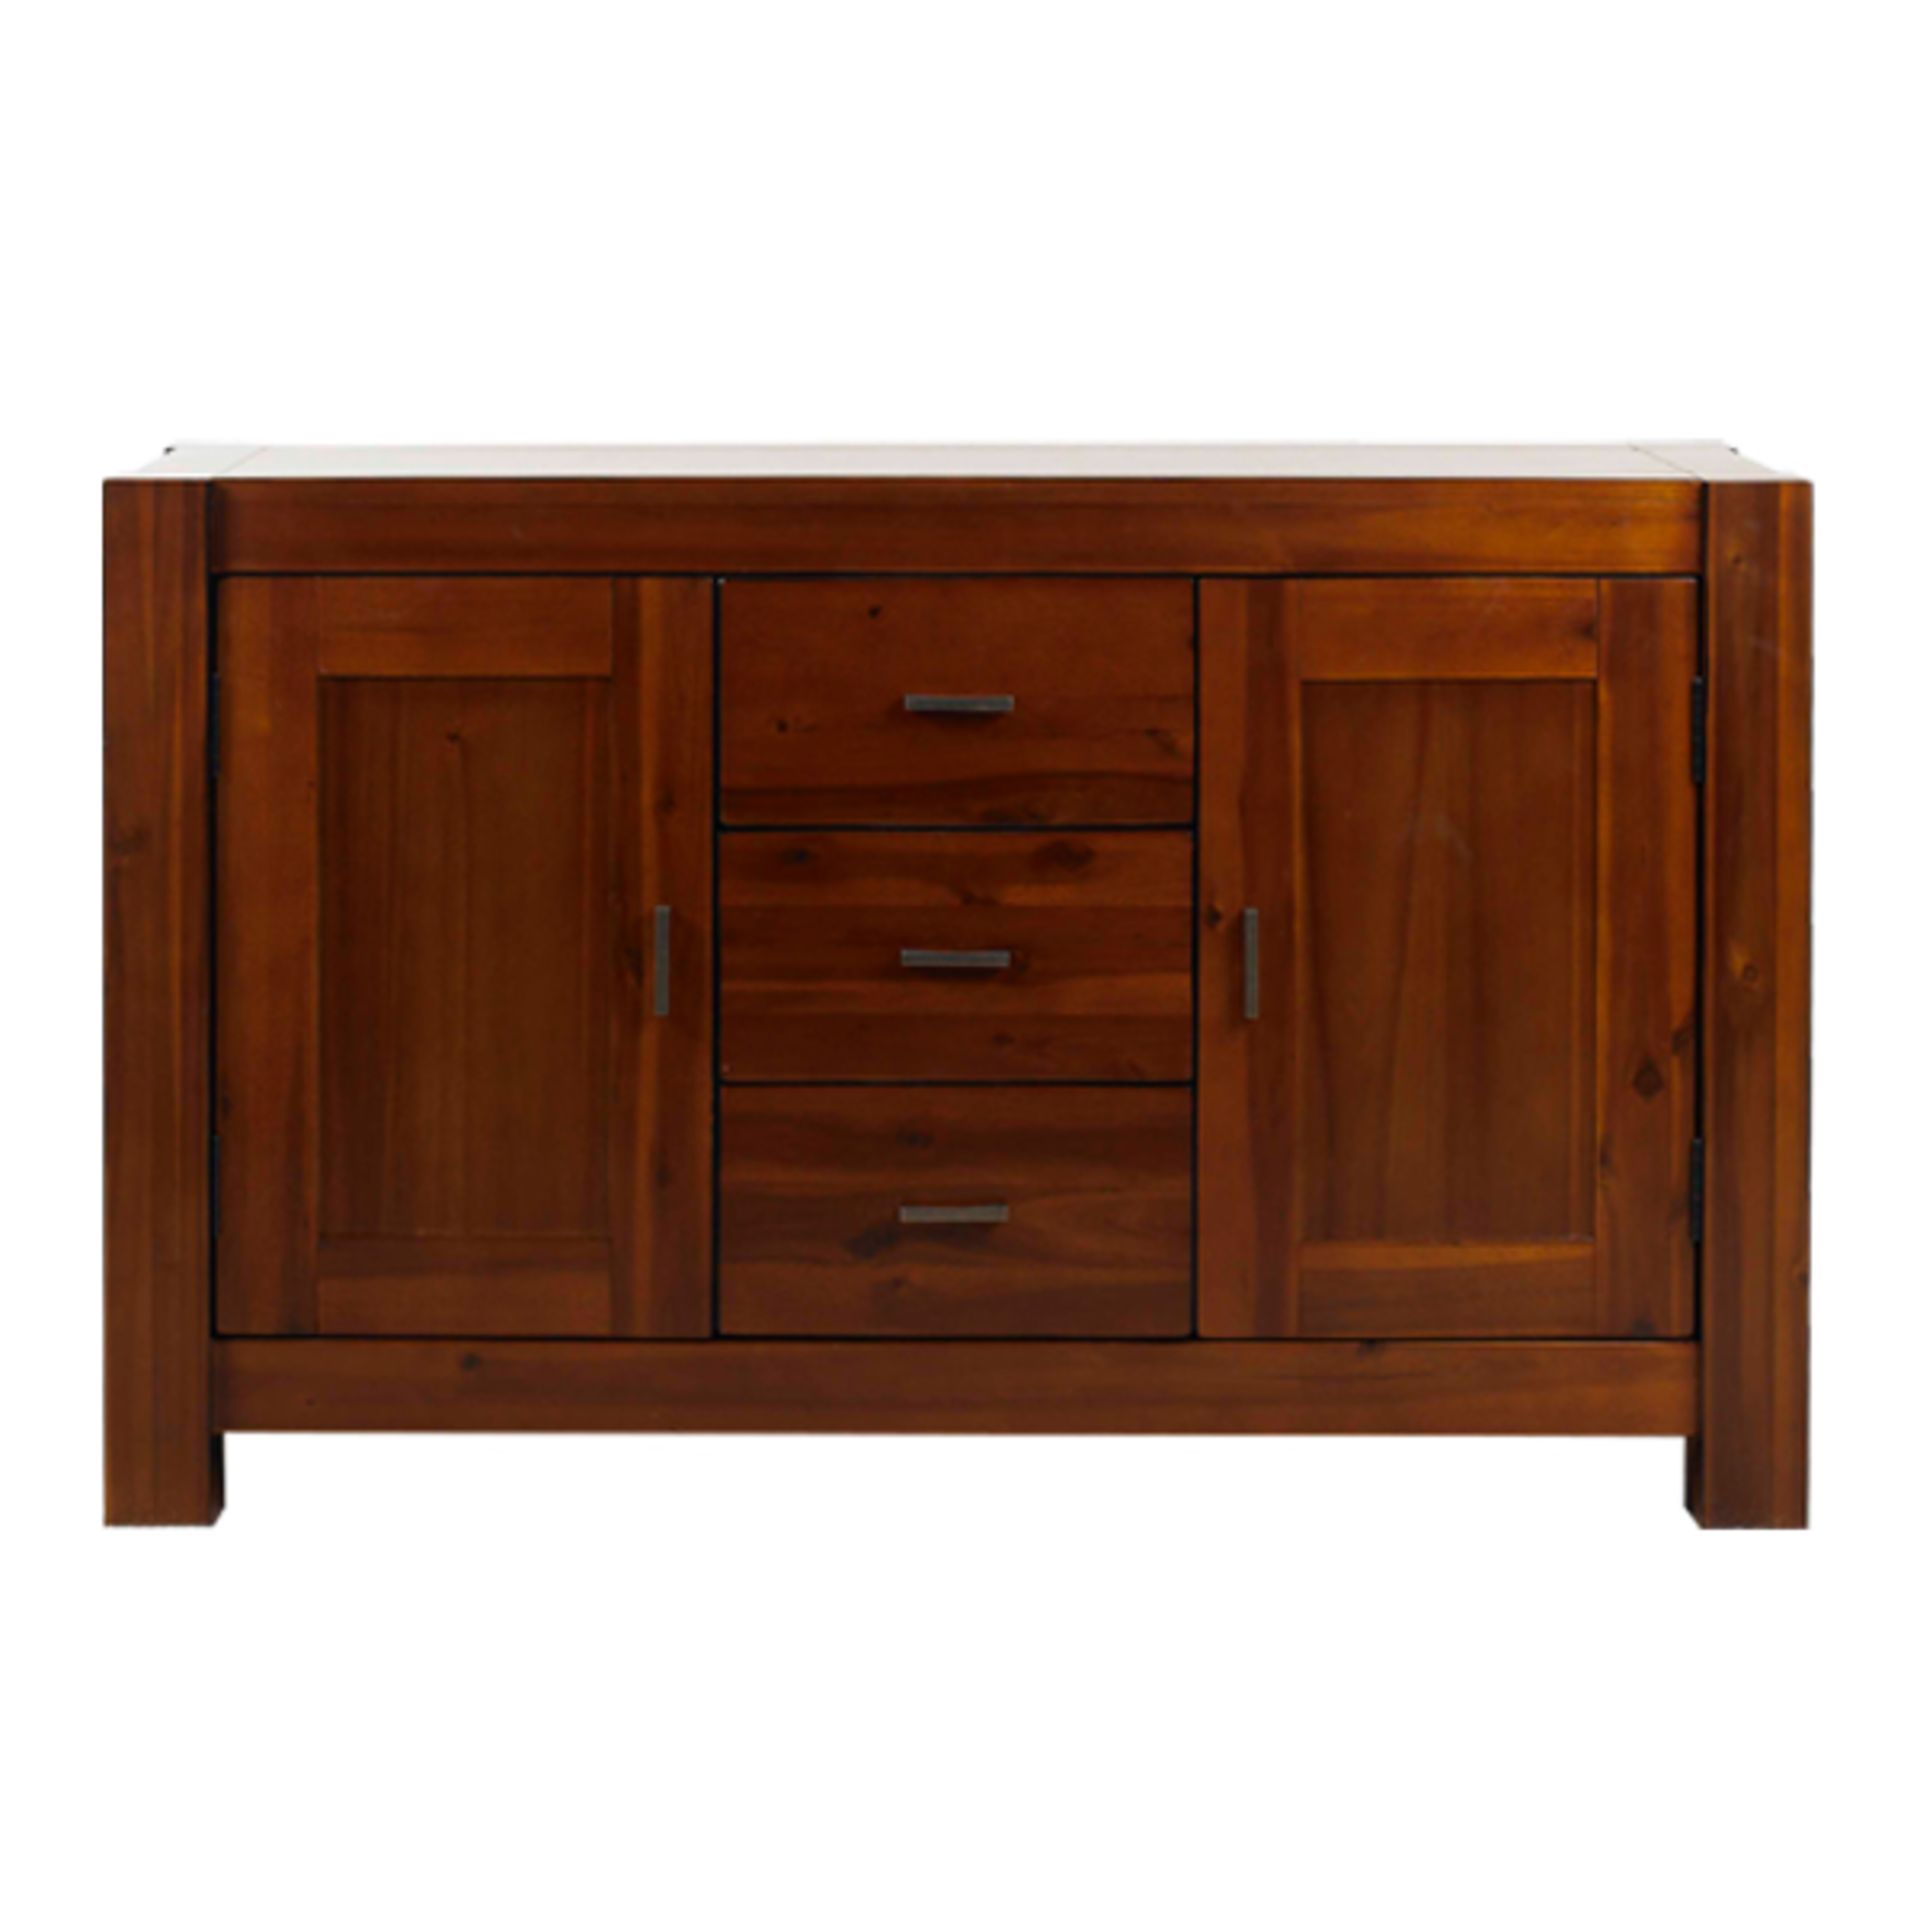 1 x Mark Webster Brackley Sideboard - Two Door / Three Drawer - Solid Acacia Wood and Veneers -